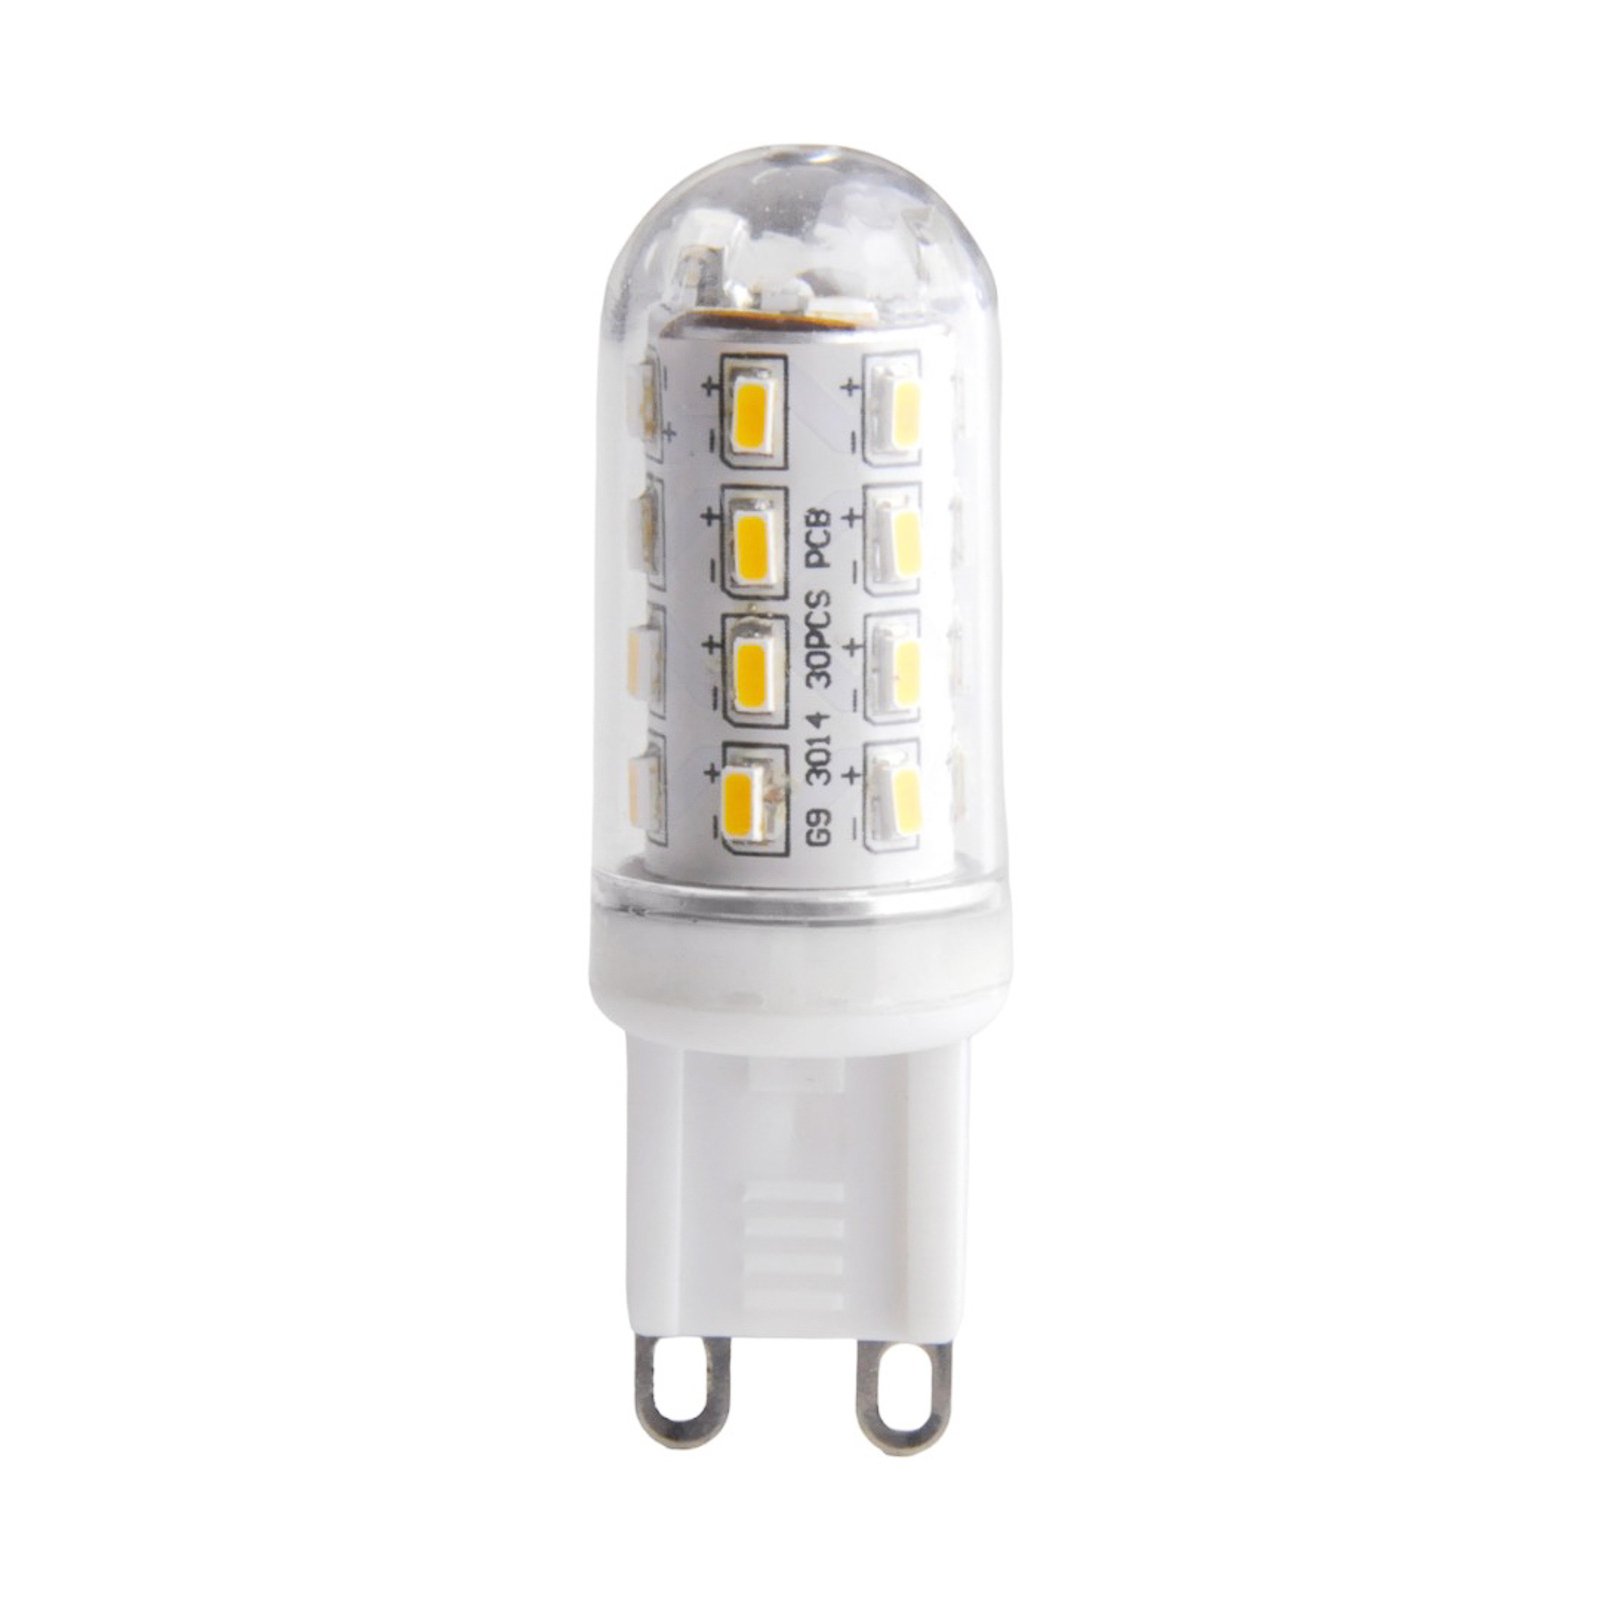 LED-lamppu kirkas G9 3W 830, putkimalli, kirkas